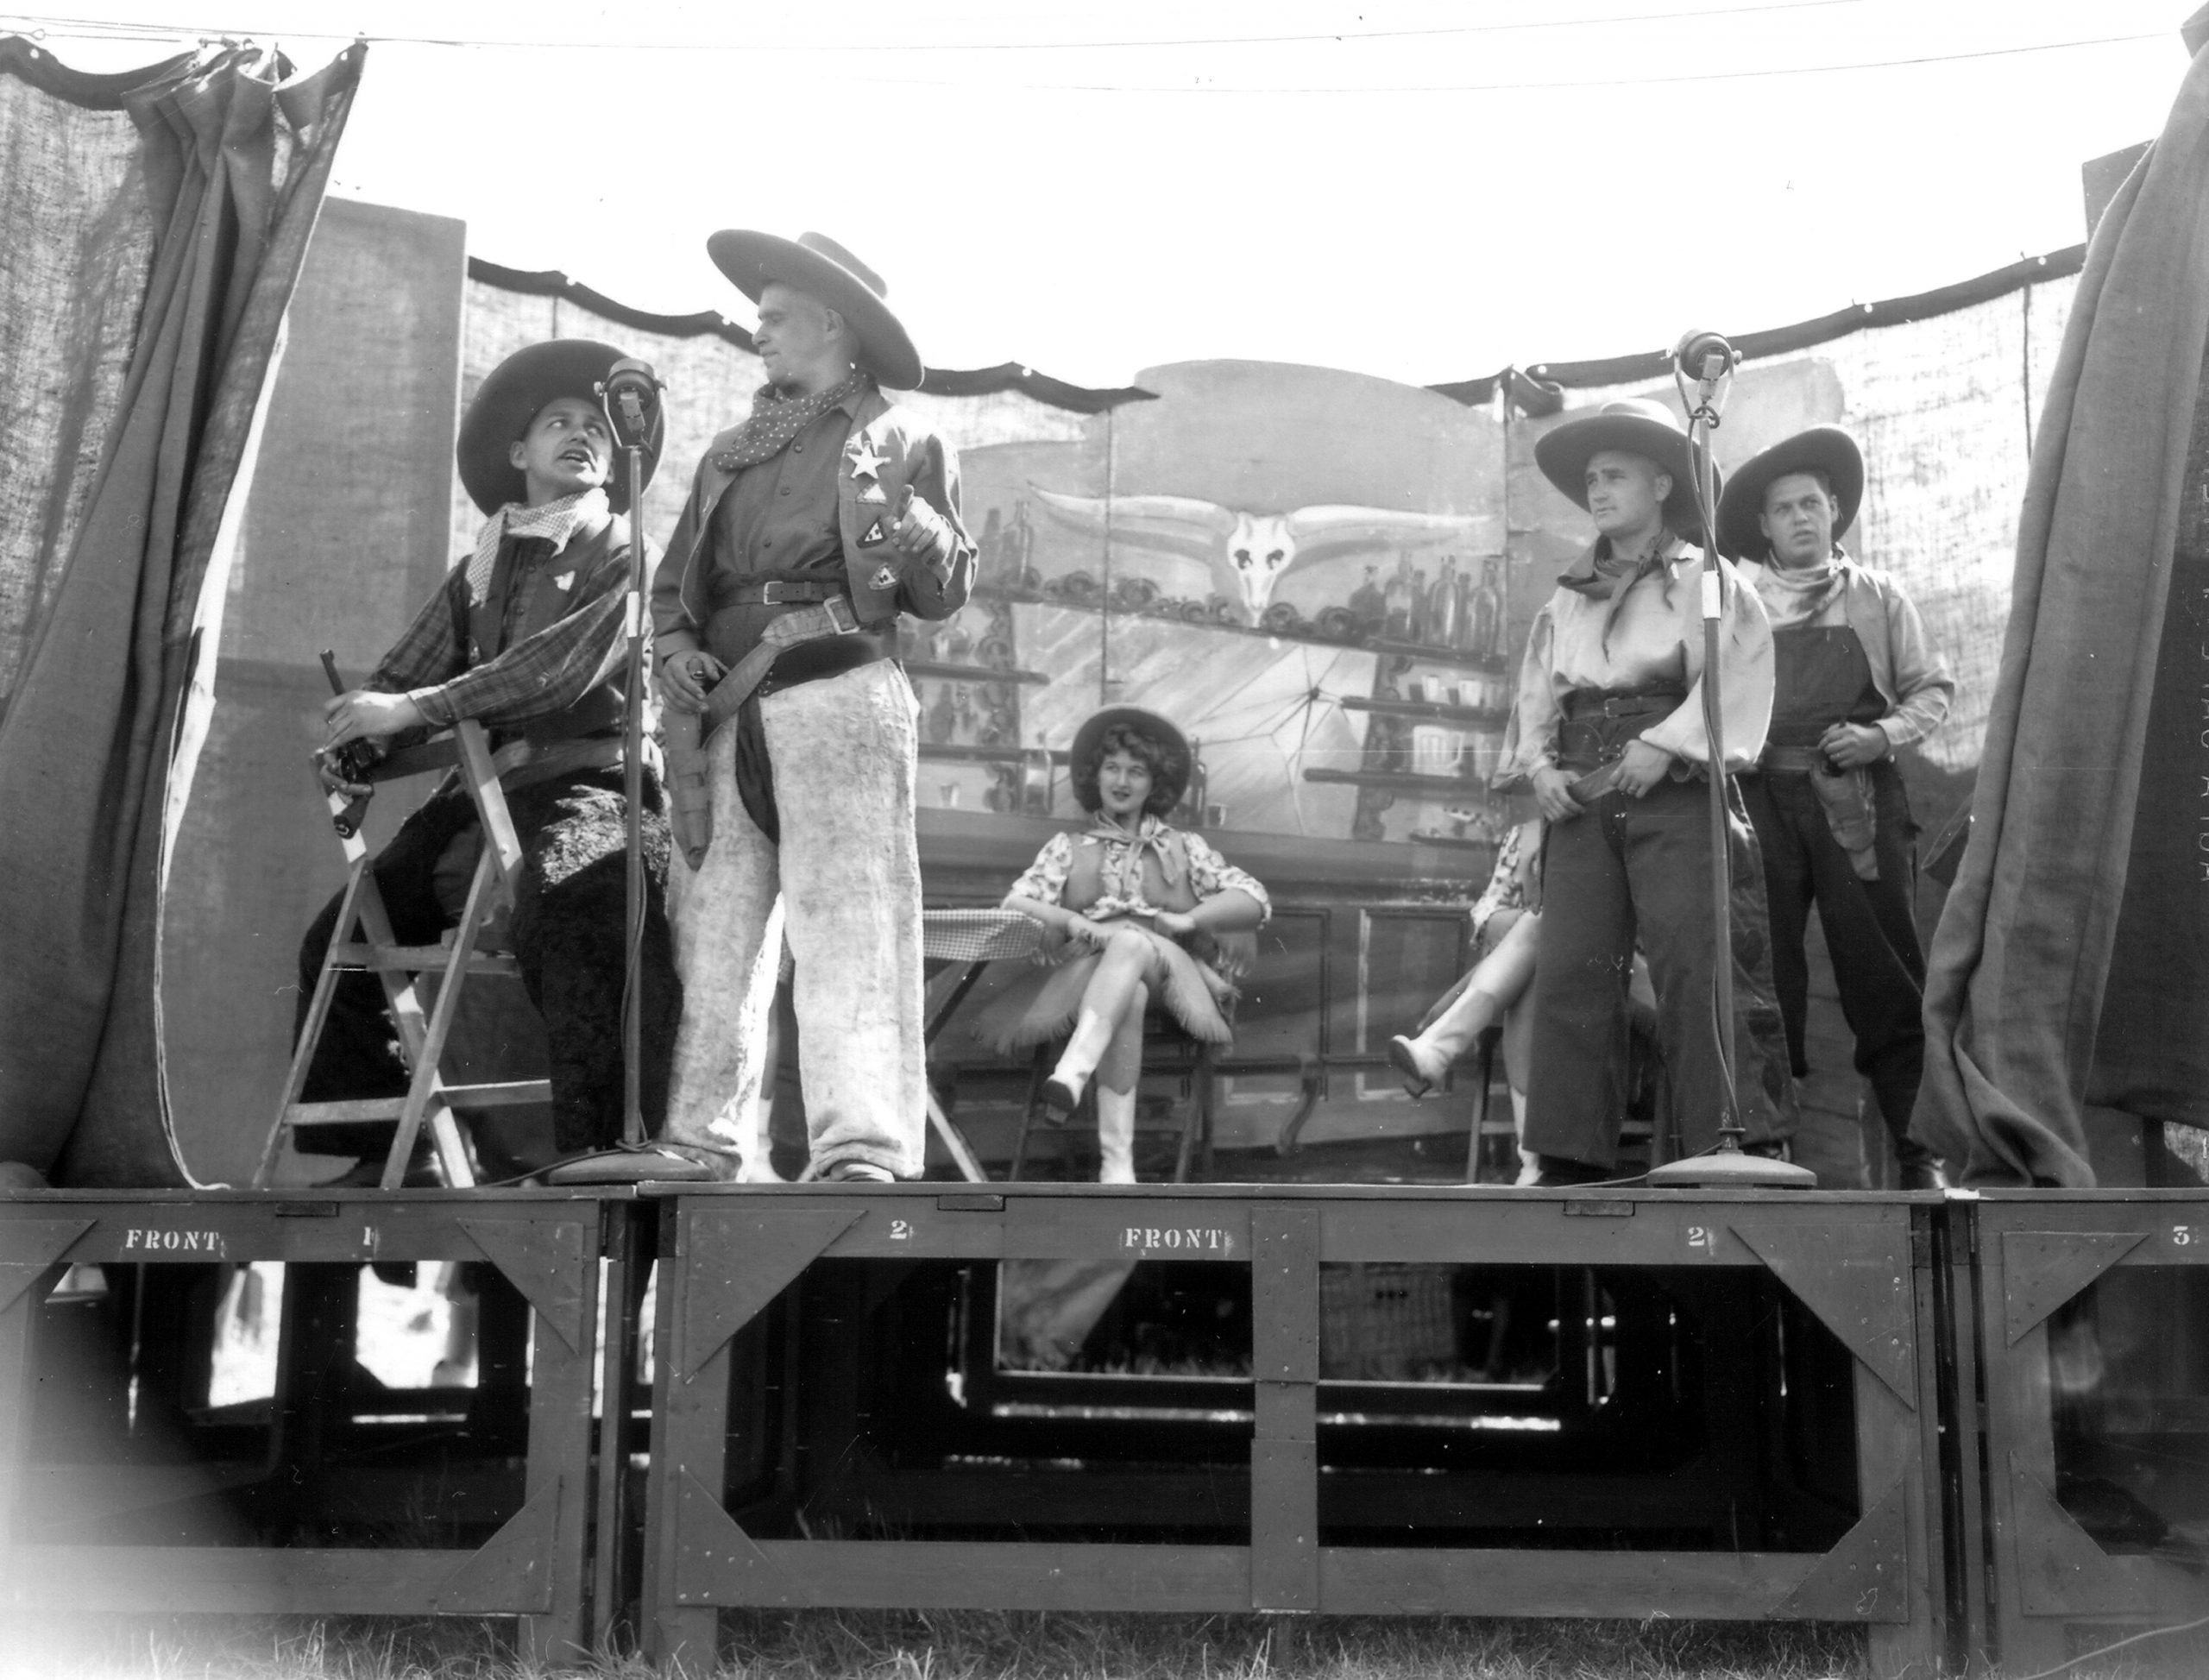 Sur une estrade des acteurs sont déguisés en cow-boys, à l'arrière-plan les danseuses sont assisses.
Reportage de 10 photos (p010871 à p010880) sur une représentation du spectacle de l'armée canadienne "Invasion Revue ", le 30 juillet 1944 à Banville.
http://www.flickr.com/search/?w=58897785%40N00&q=invasion%3A+revue%3B+canadien&m=text
Banville au sud de Graye-sur-Mer (secteur Juno) est libérée le 6 juin 1944 par les Canadiens. Le 25th  Airfield Construction Group, RE du 12th AGRE chargé de l'aménagement et de la réparation des terrains d'aviation de campagne était à Banville.
L'ALG B-3 est à proximité immédiate.